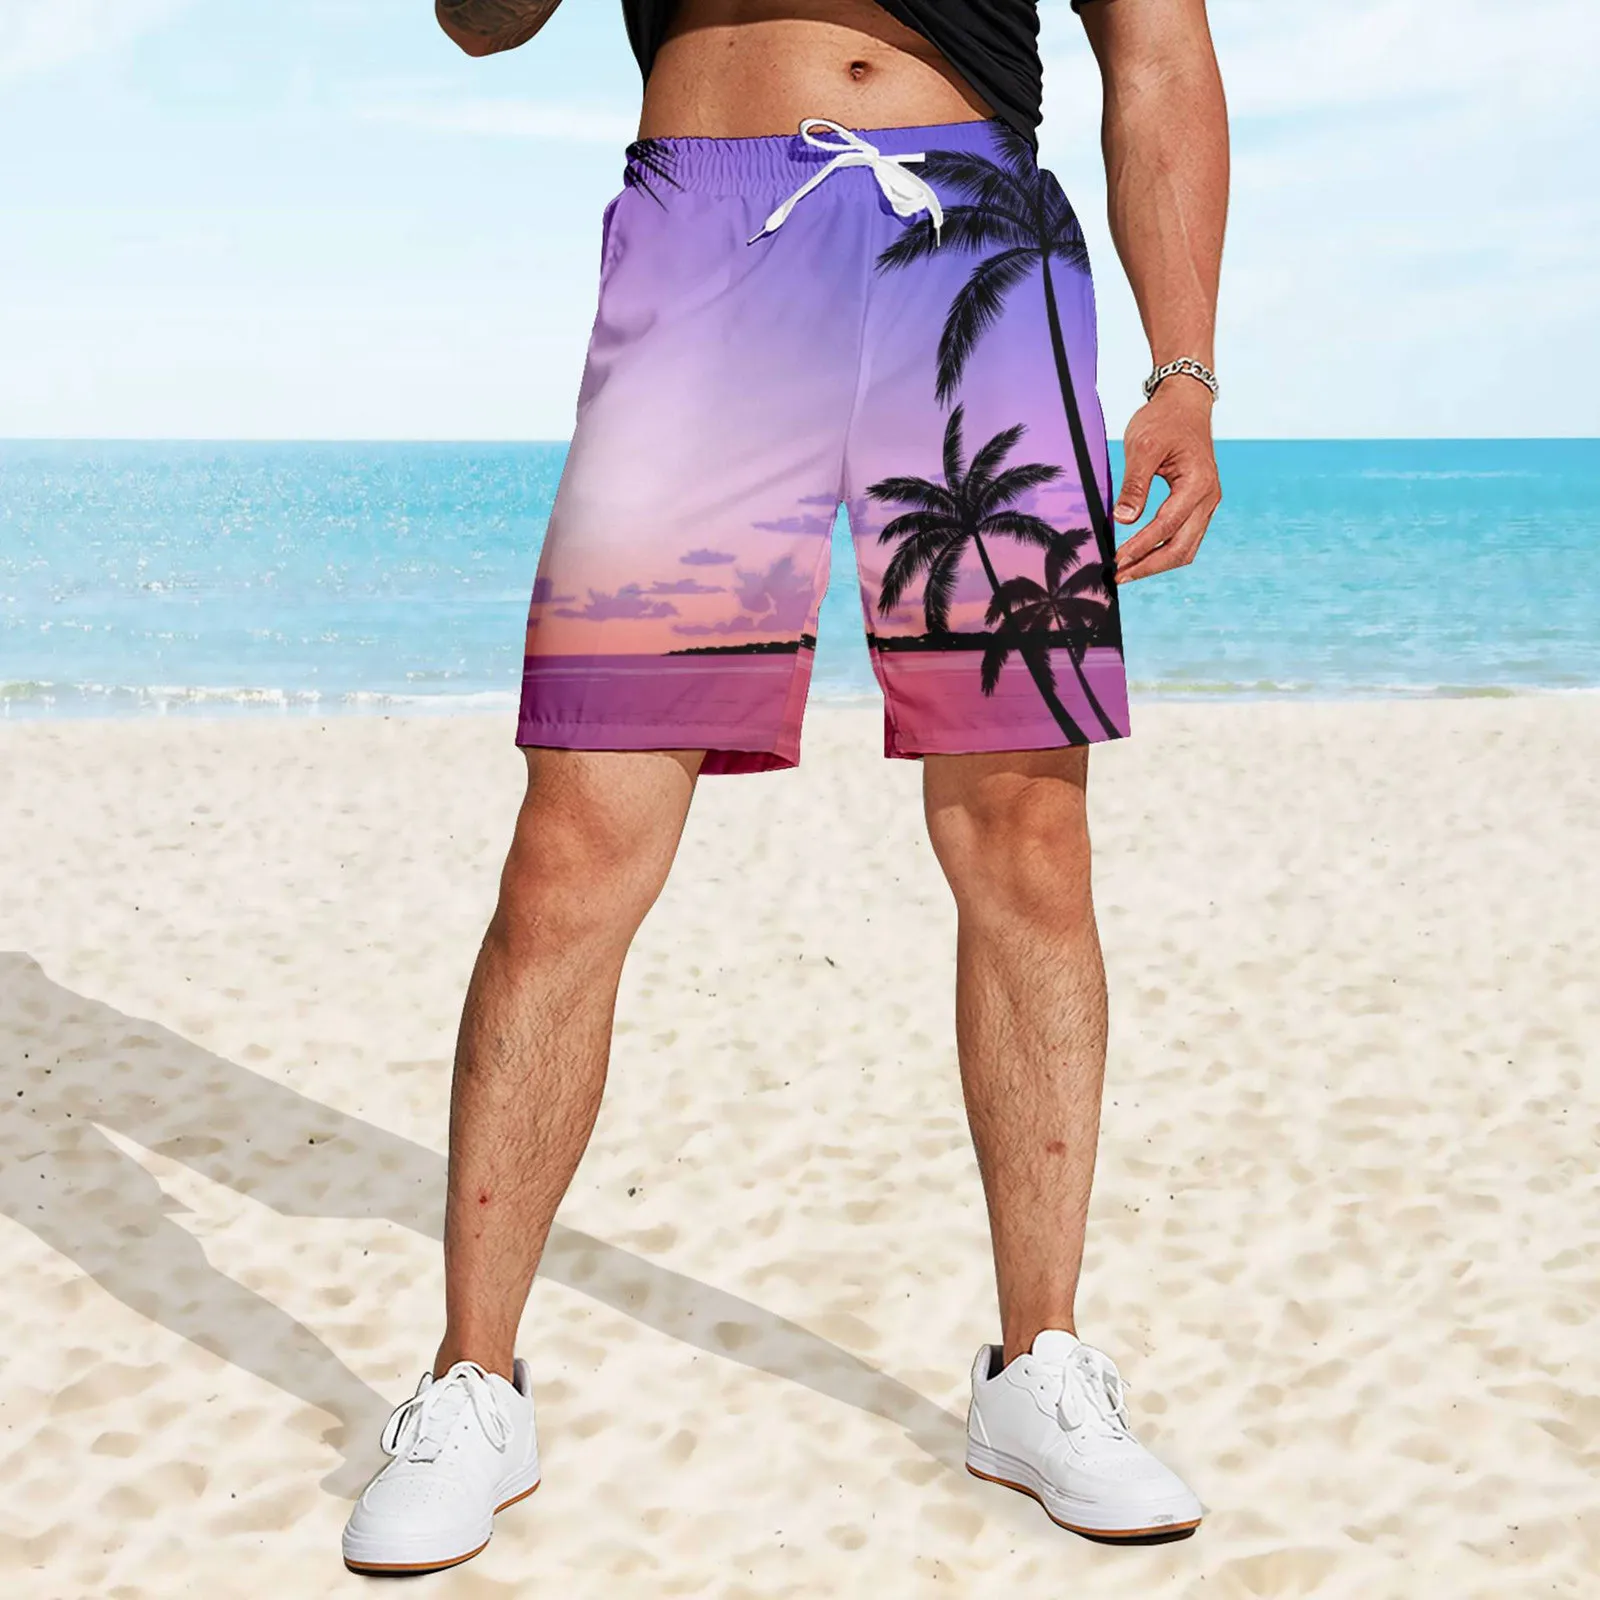 

Hawaiian Loose Shorts Leaf Print Trunks Elastic Summer Drawstring Men's Shorts Breathable Vacation Holiday Pantalones Cortos